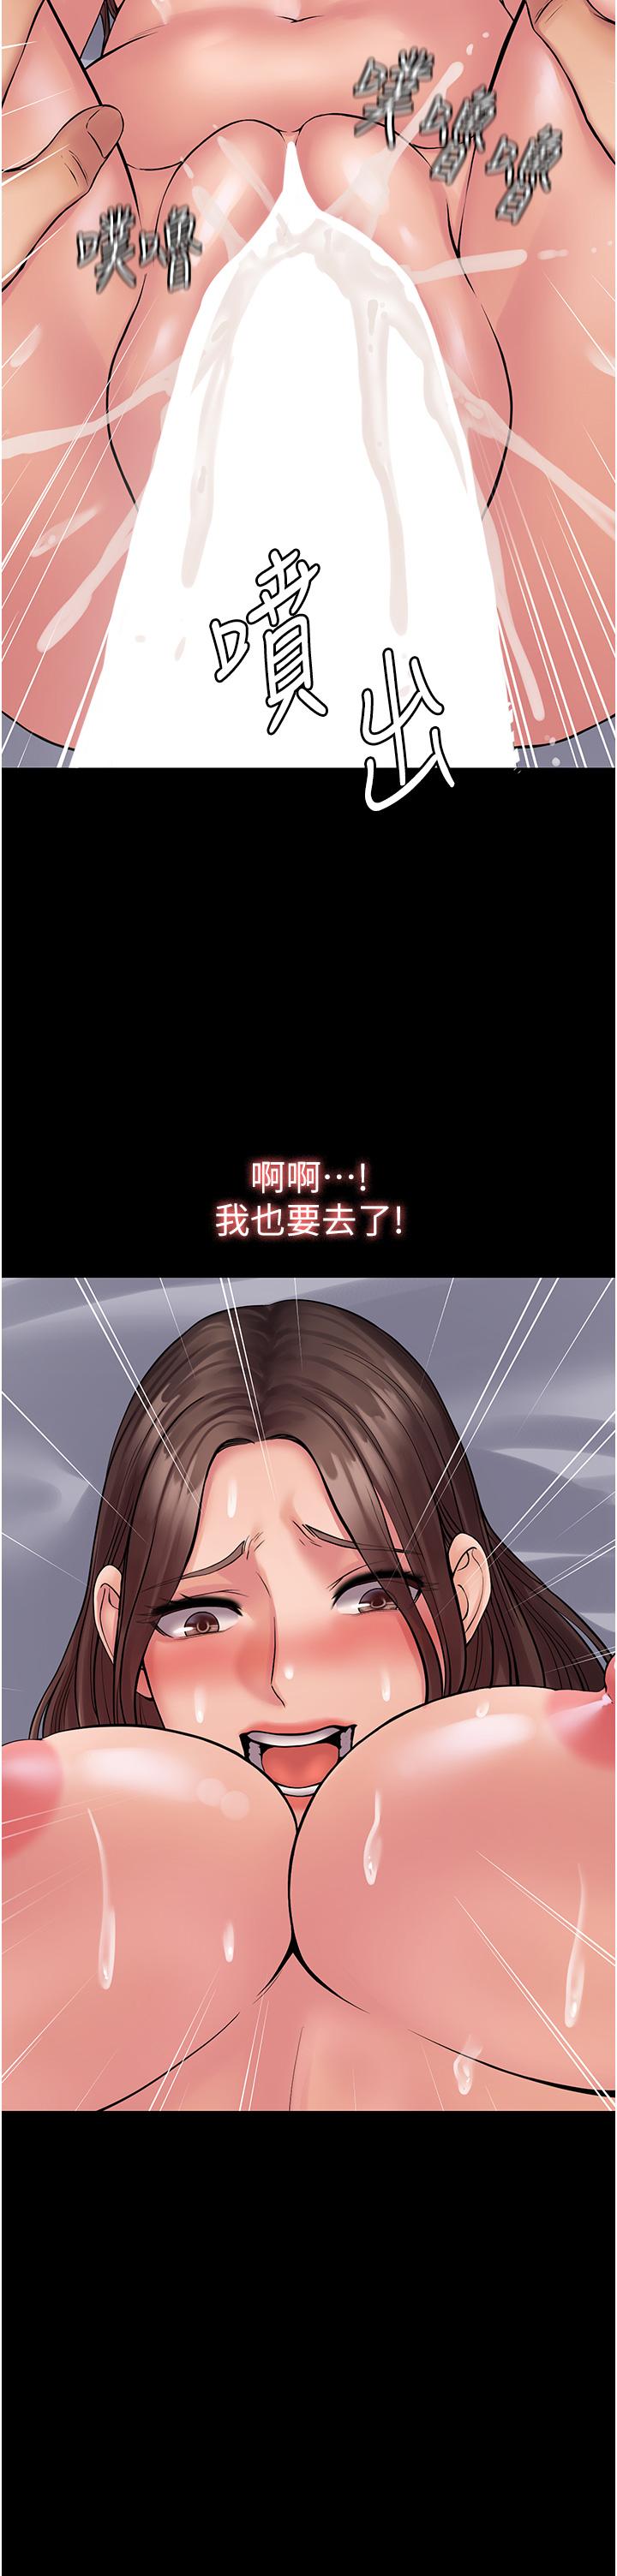 韩国污漫画 PUA完全攻略 第23话-在总务室交换体液 3